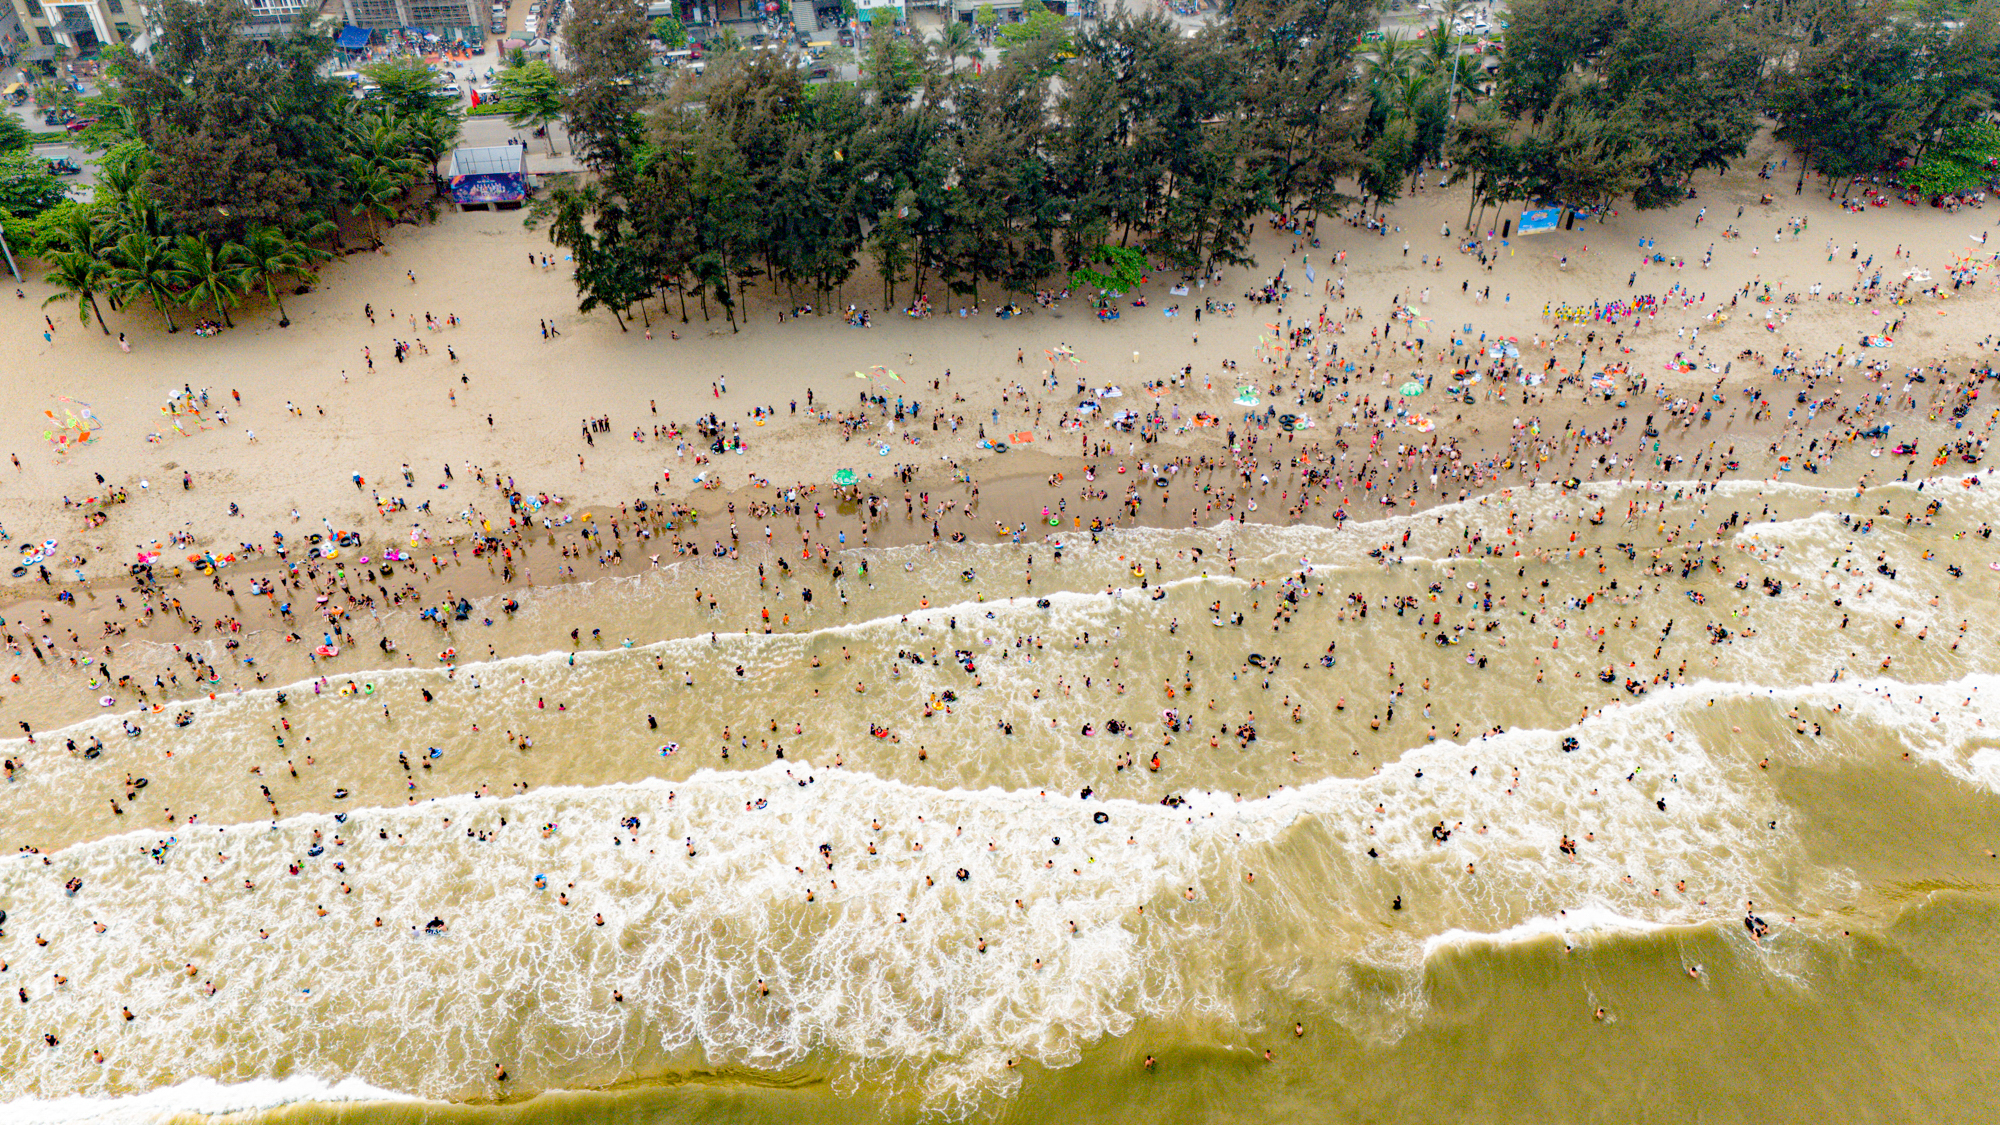 Bãi biển Sầm Sơn ken đặc người đổ về giải nhiệt, du khách nói 3 lý do quyết lựa chọn nơi này- Ảnh 2.